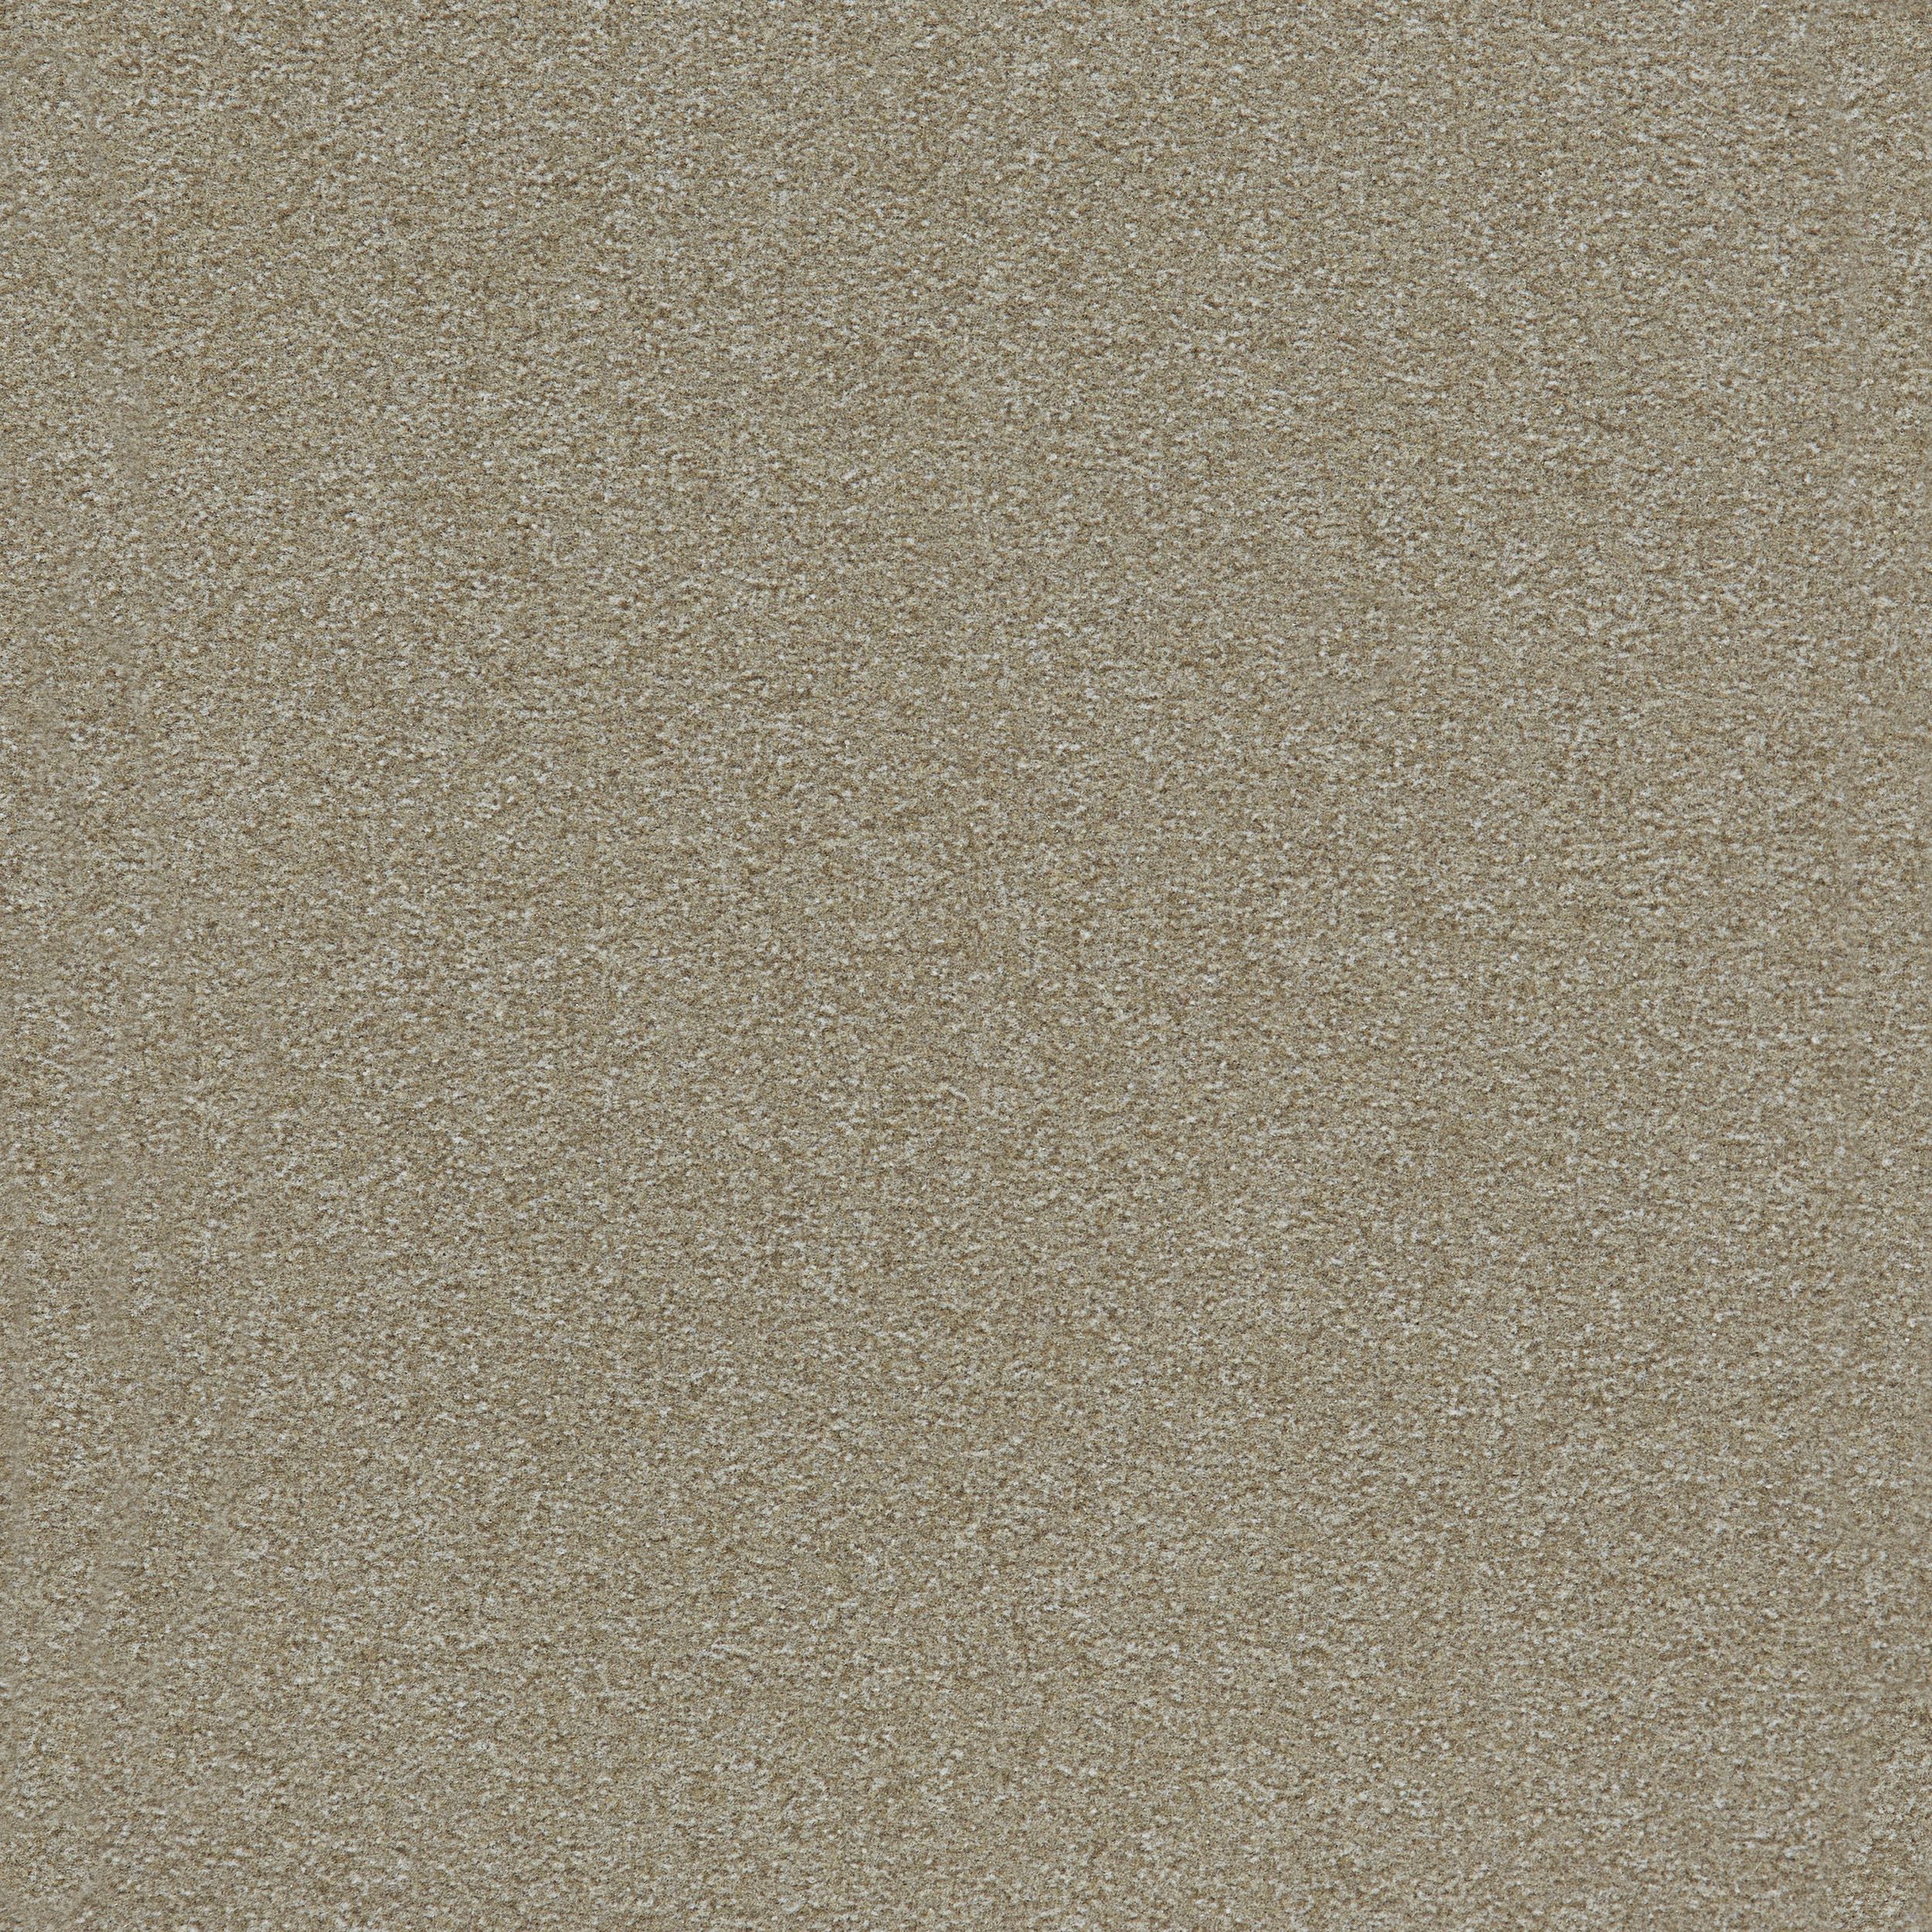 Heuga 725 Carpet Tile In Oyster número de imagen 9